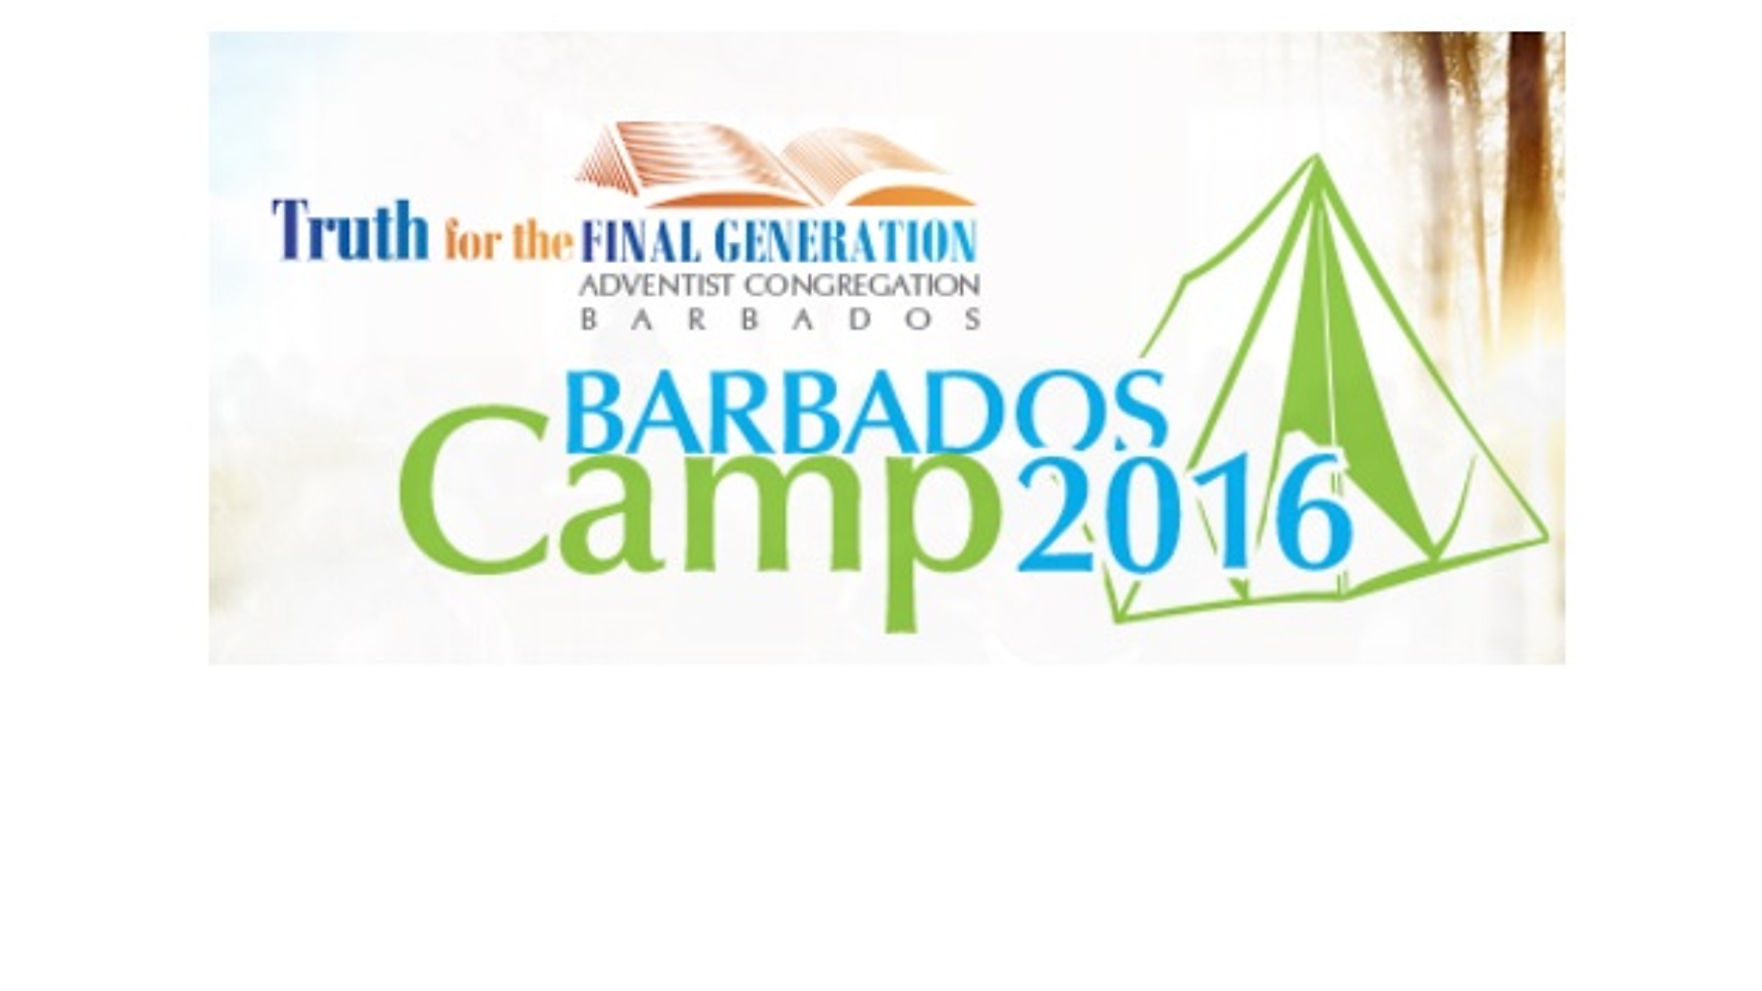 Barbados Camp 2016